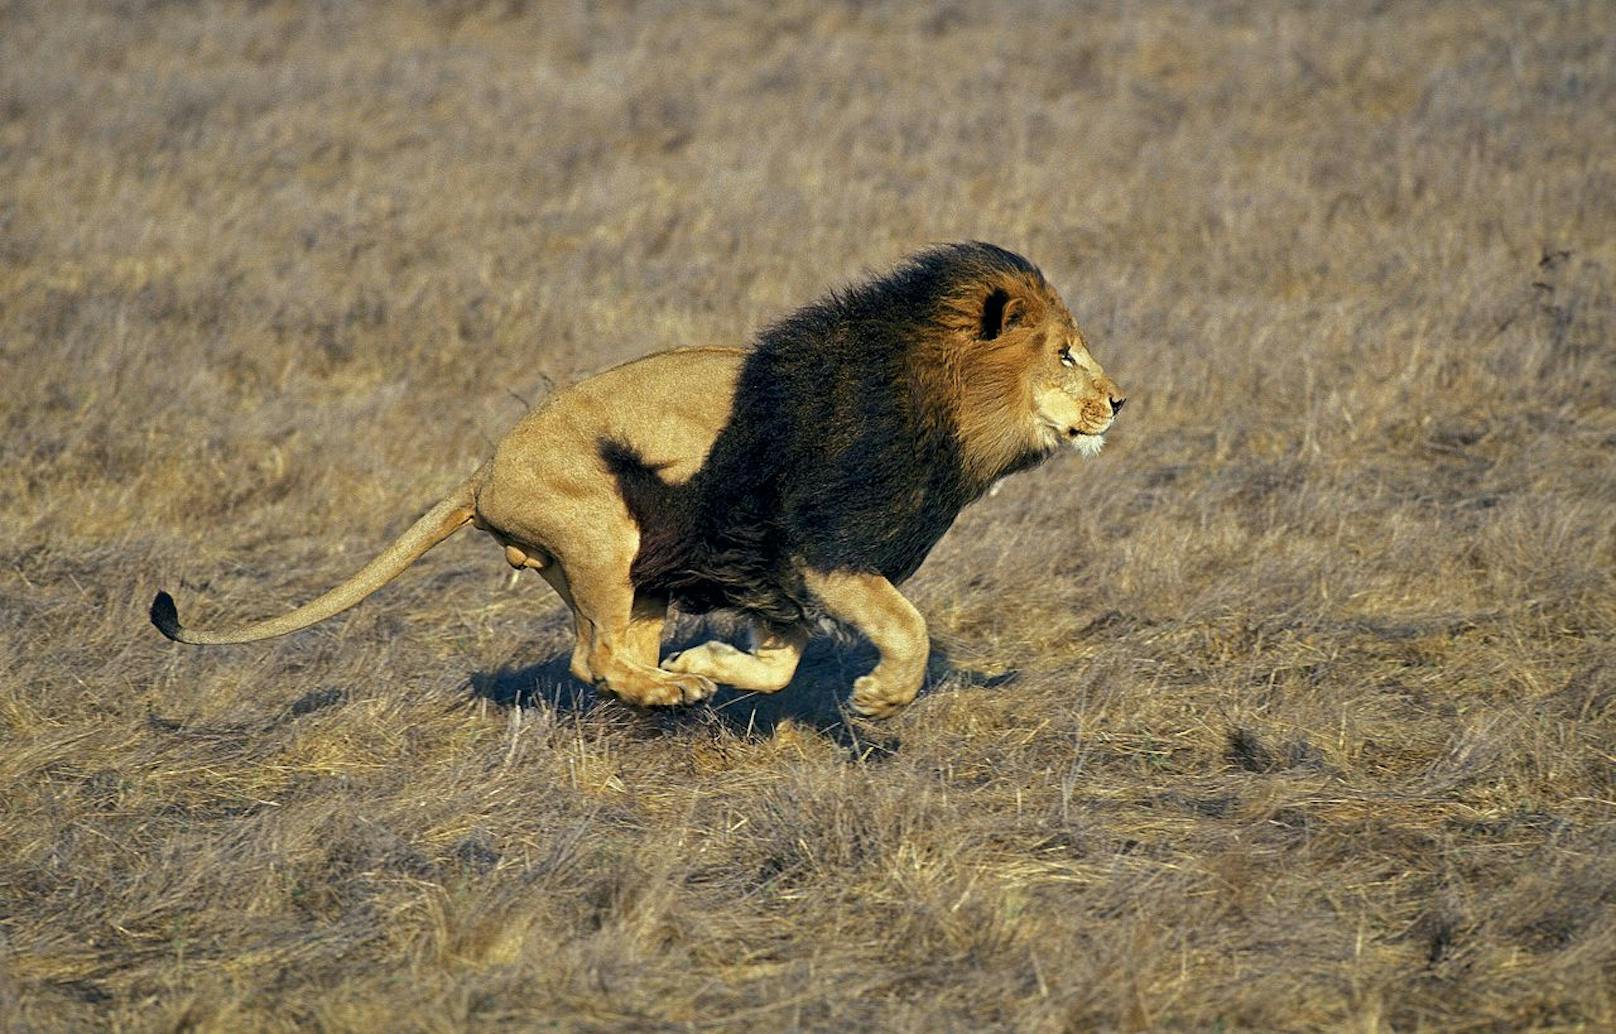 Wer hätt's gedacht? Ein Löwe kann bis zu 80 km/h erreichen und ist deshalb die zweitschnellste Raubkatze. 